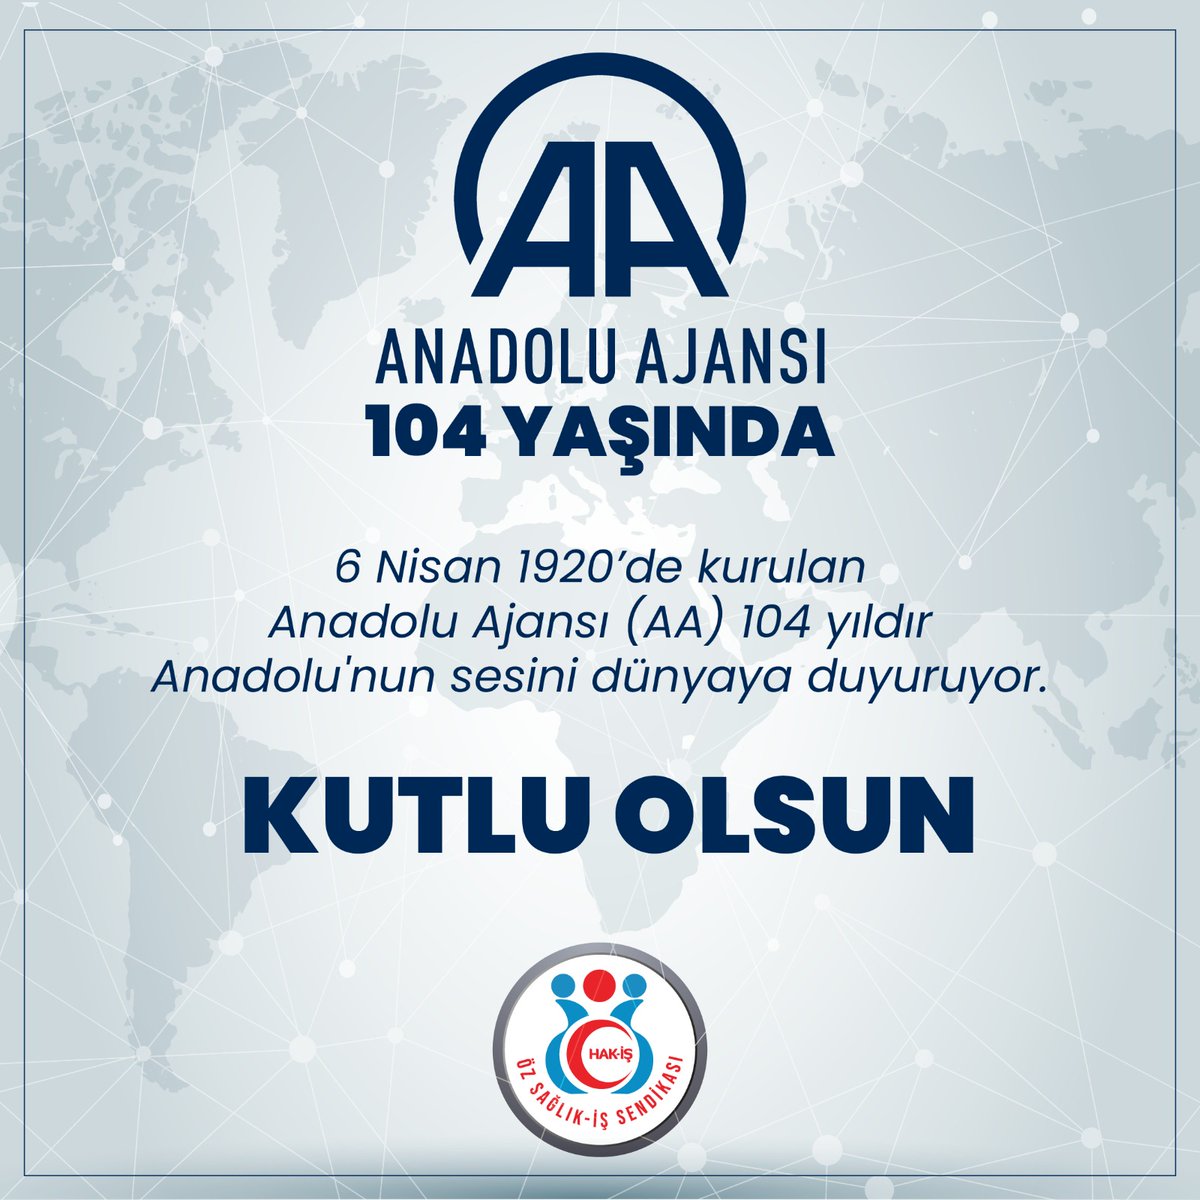 1920 yılından bugüne kadar Anadolu’nun sesini dünyaya duyuran, güvenilir ve tarafsız habercilik anlayışıyla çalışma hayatının, üretimin,işçinin, emeğin sesini tüm dünyaya duyuran @anadoluajansi'nın 104. kuruluş yıl dönümünü tebrik ederim.